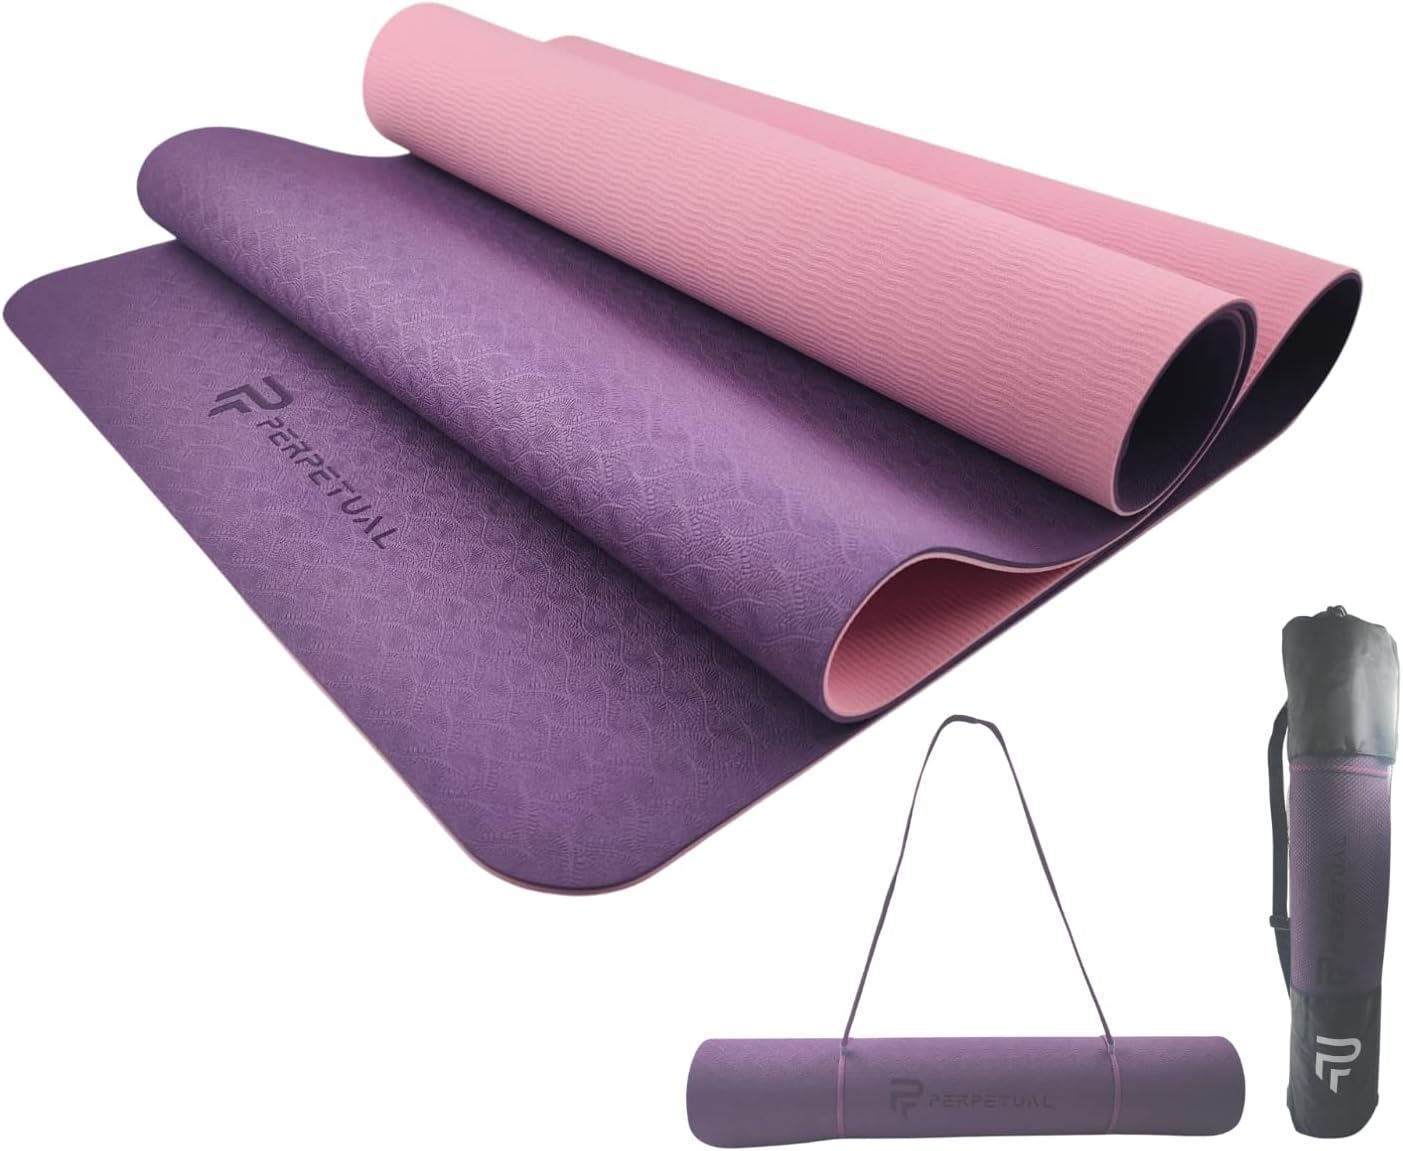 Esterilla Perpetual De Yoga Y Pilates Antideslizante De 6mm Con Correa Y Bolsa De Transporte - violeta - 